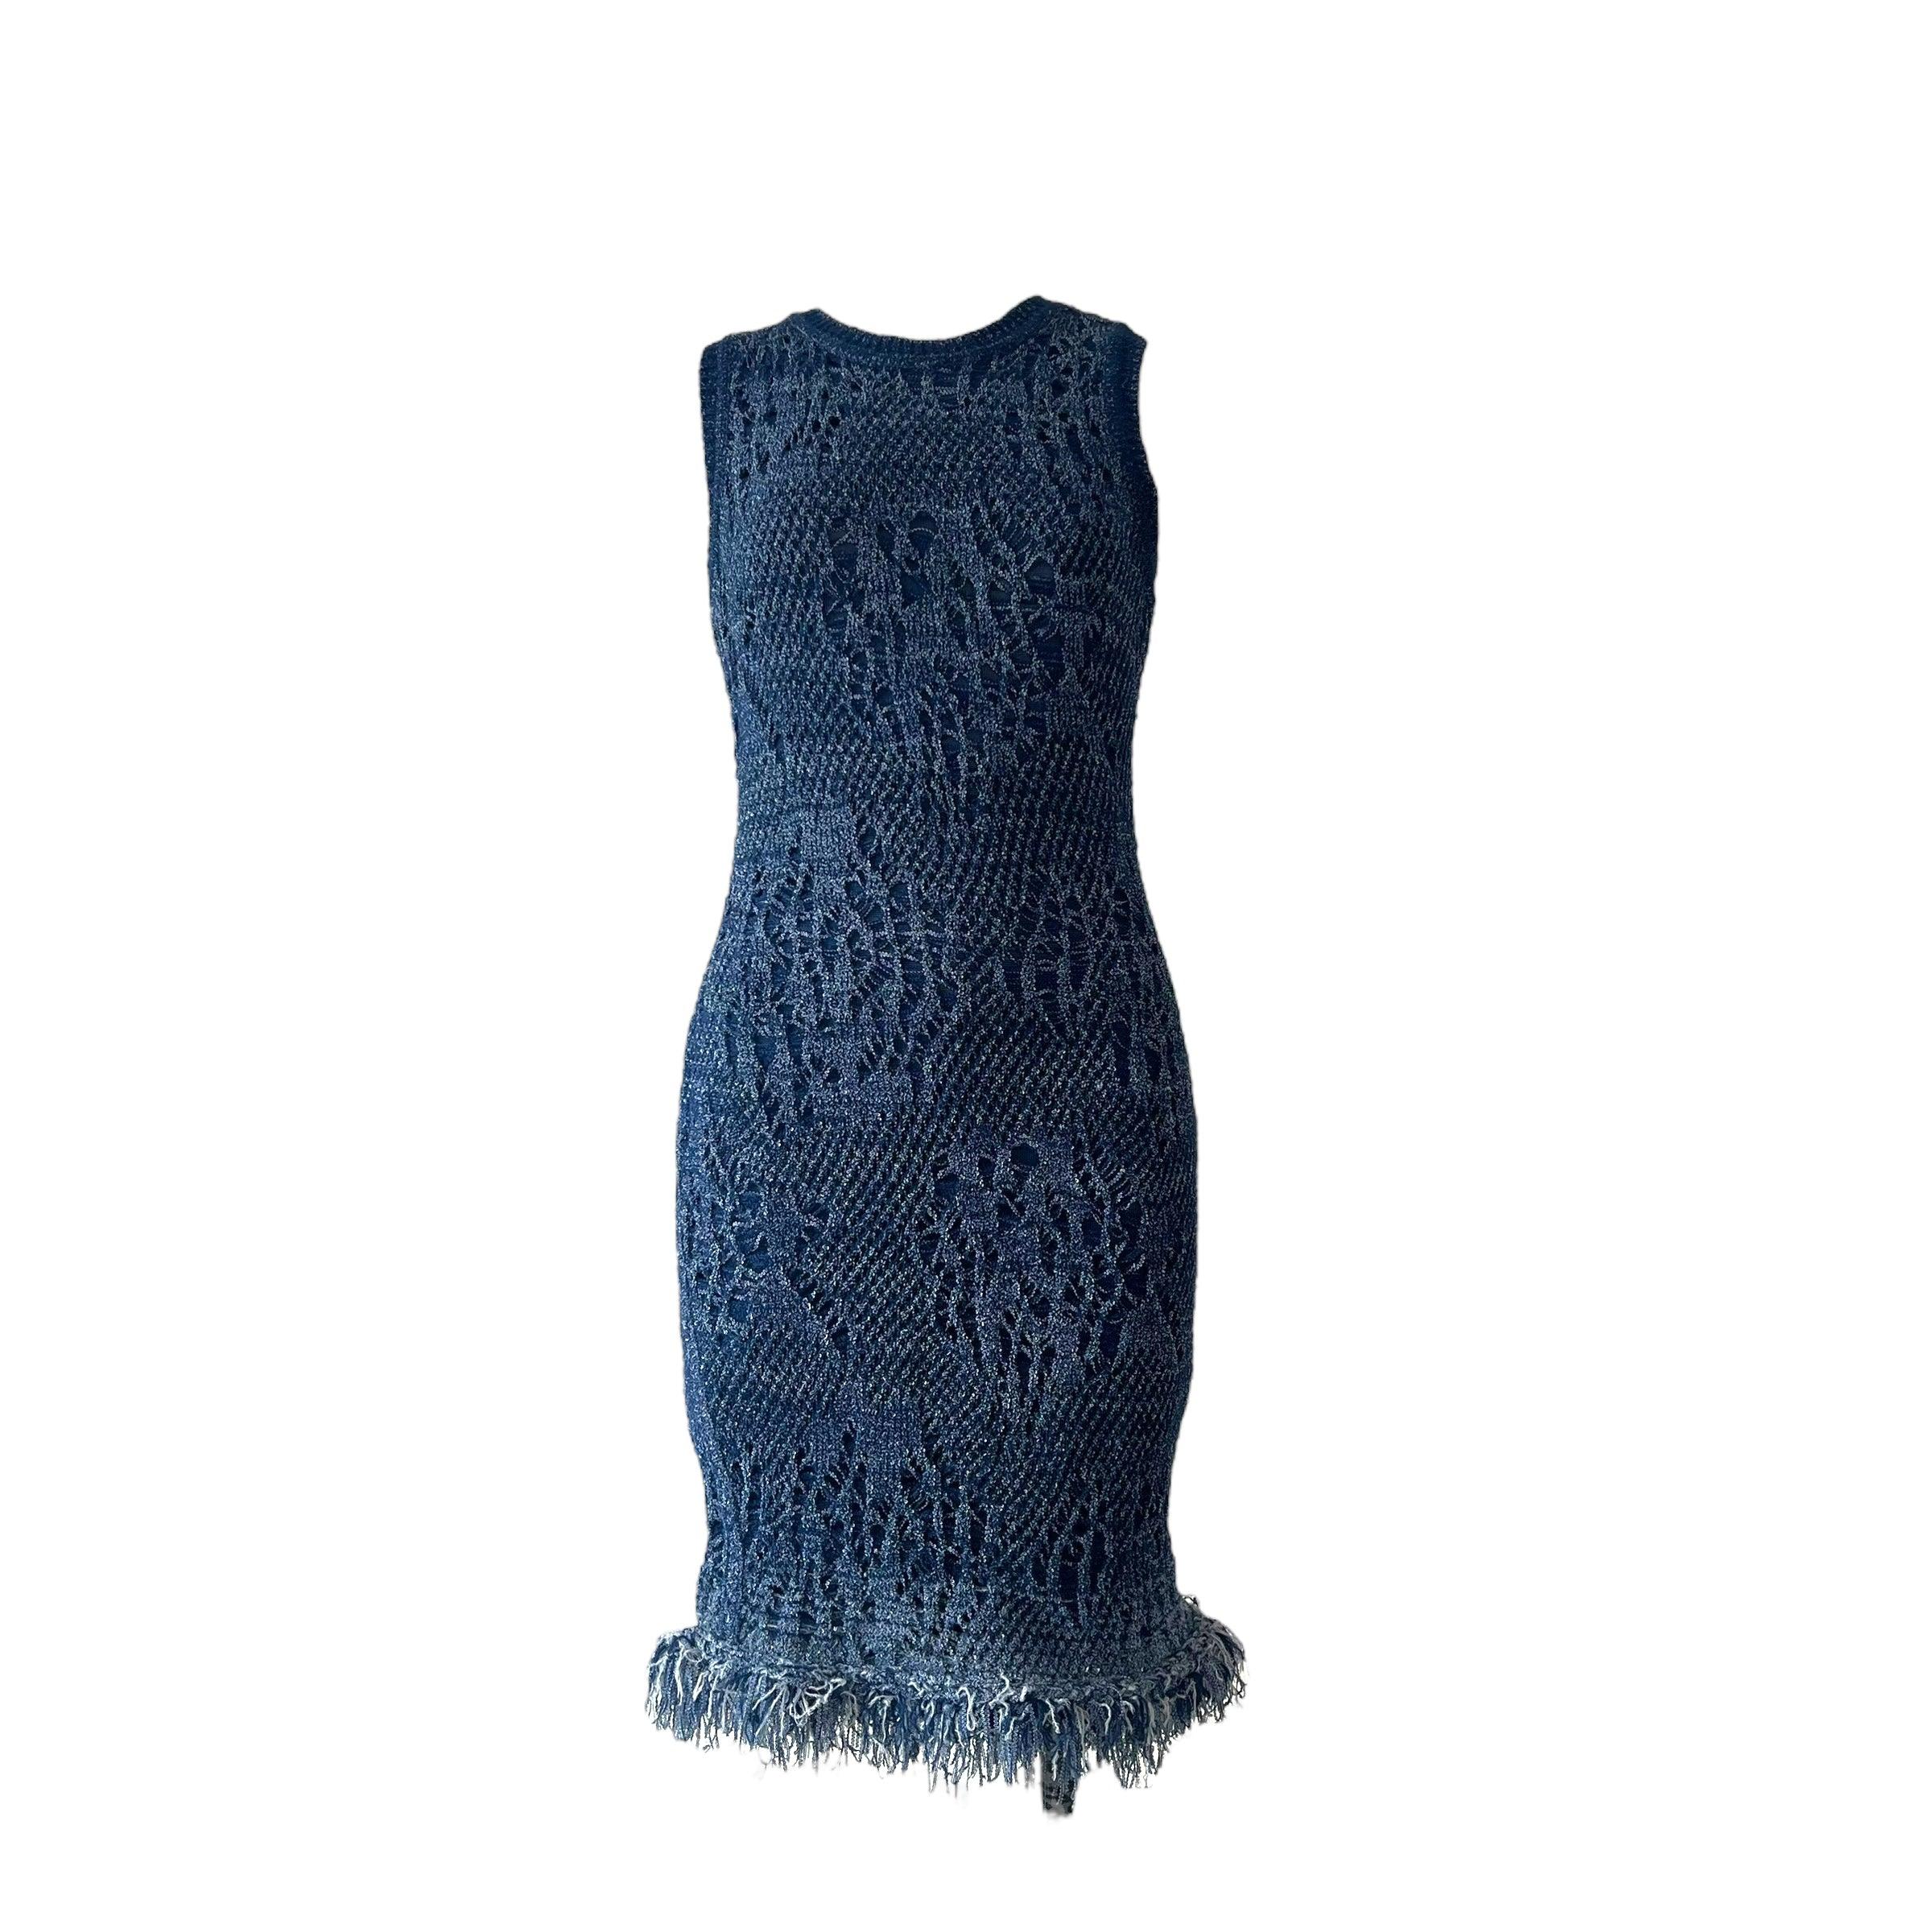 Voici la robe bodycon en maille ajourée bleue emblématique de Christian Dior, issue de la collection printemps-été 2000, méticuleusement conçue par le créateur visionnaire, John Galliano. Cette robe au genou présente un col ras du cou et incorpore